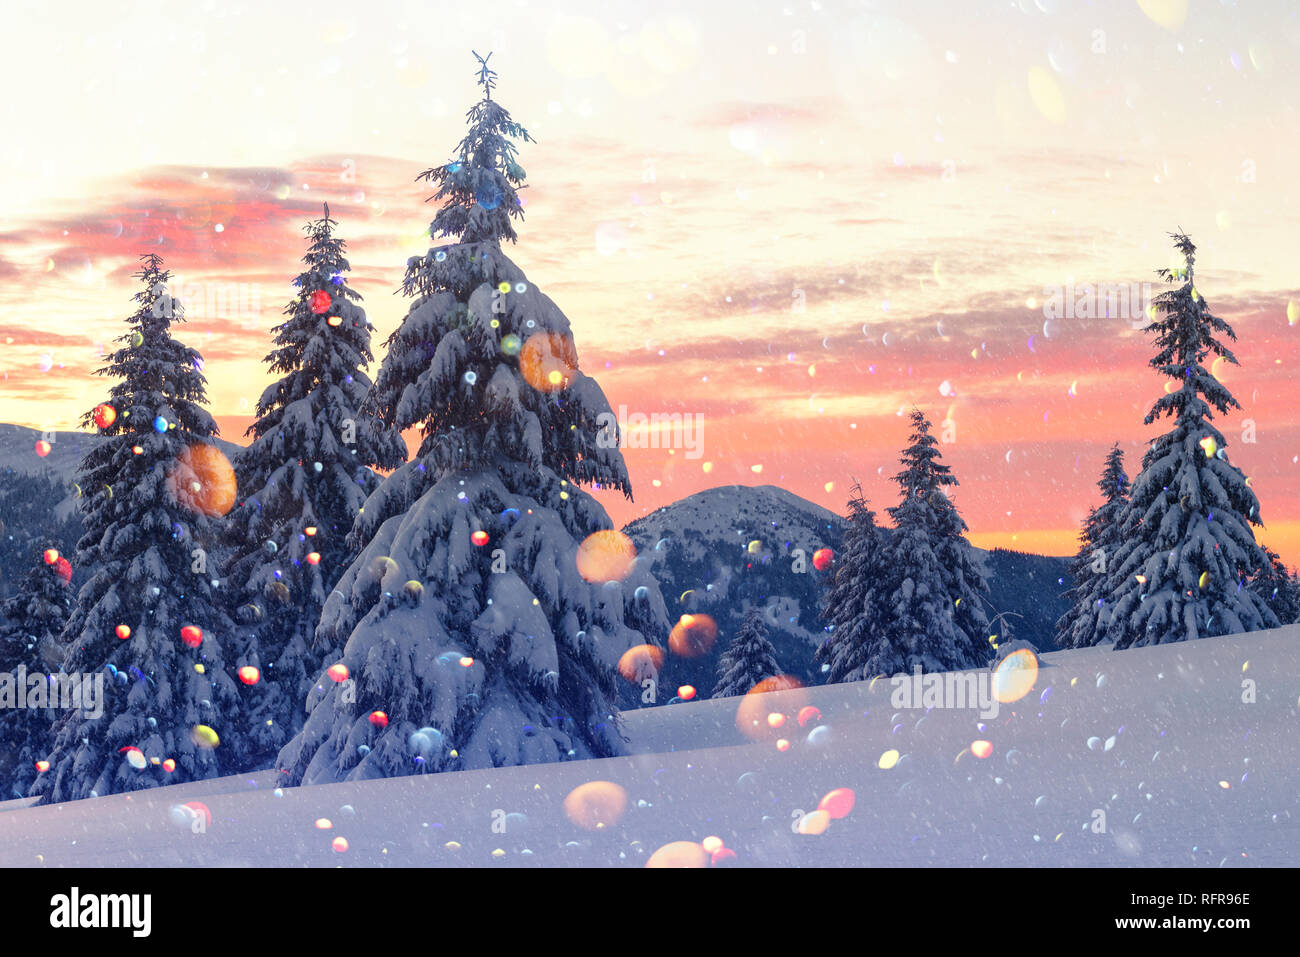 Fantastische orange Winterlandschaft in Snowy Mountains glühende durch Sonnenlicht. Dramatische winterliche Szene mit verschneiten Bäumen. DOF bokeh Licht postprocessing Effekt. Weihnachten collage Stockfoto